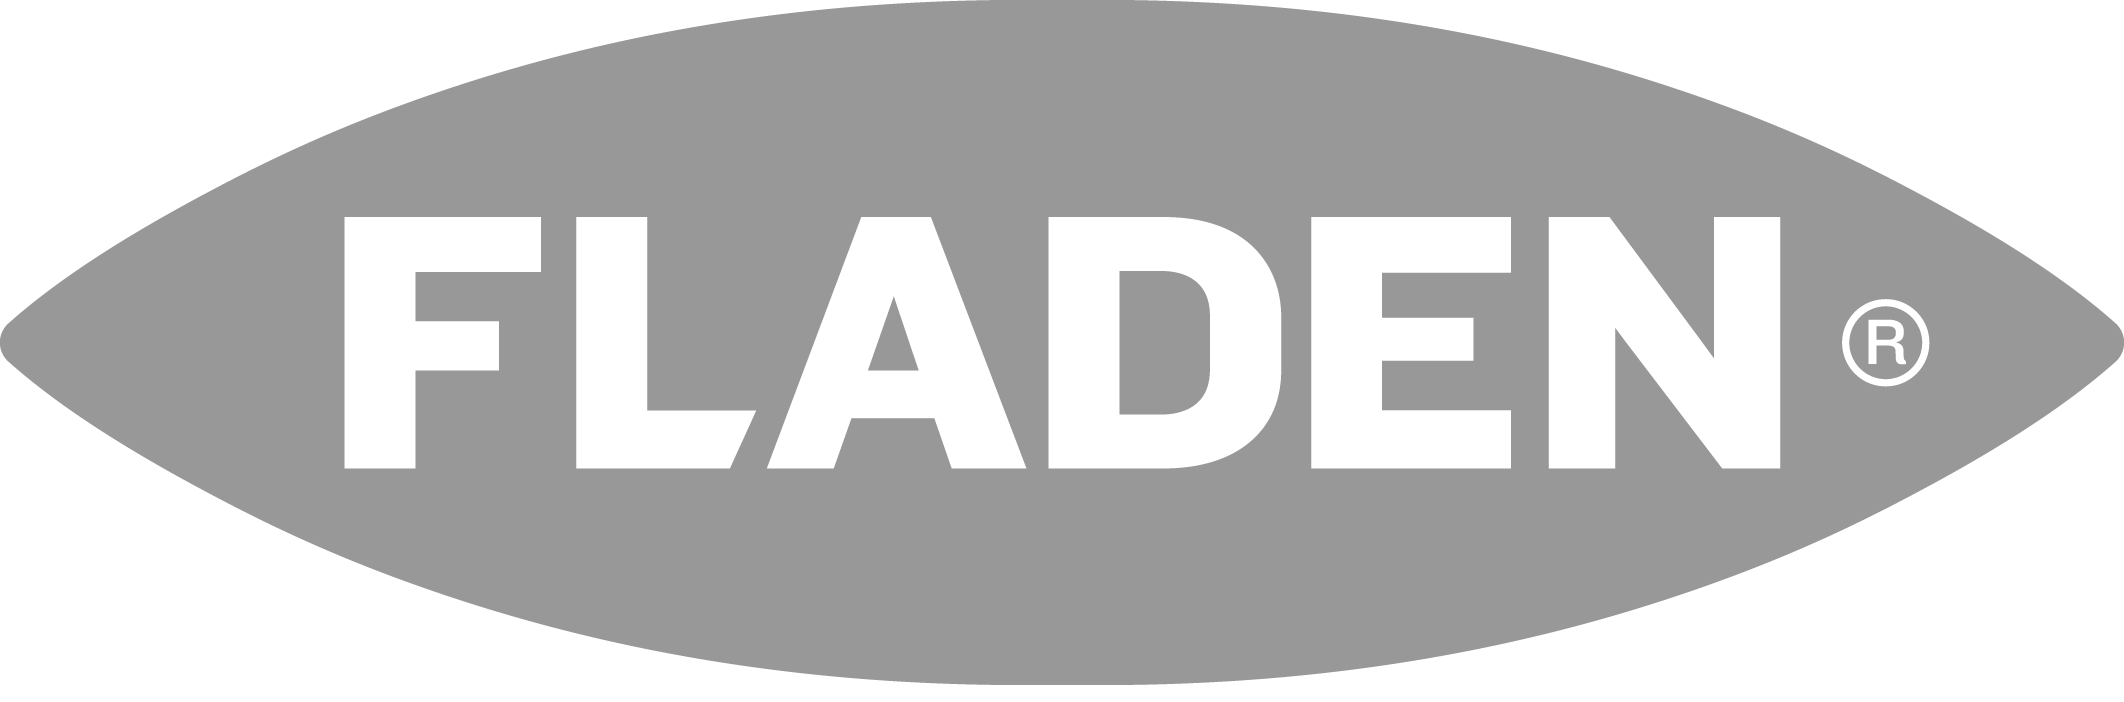 Fladen logo